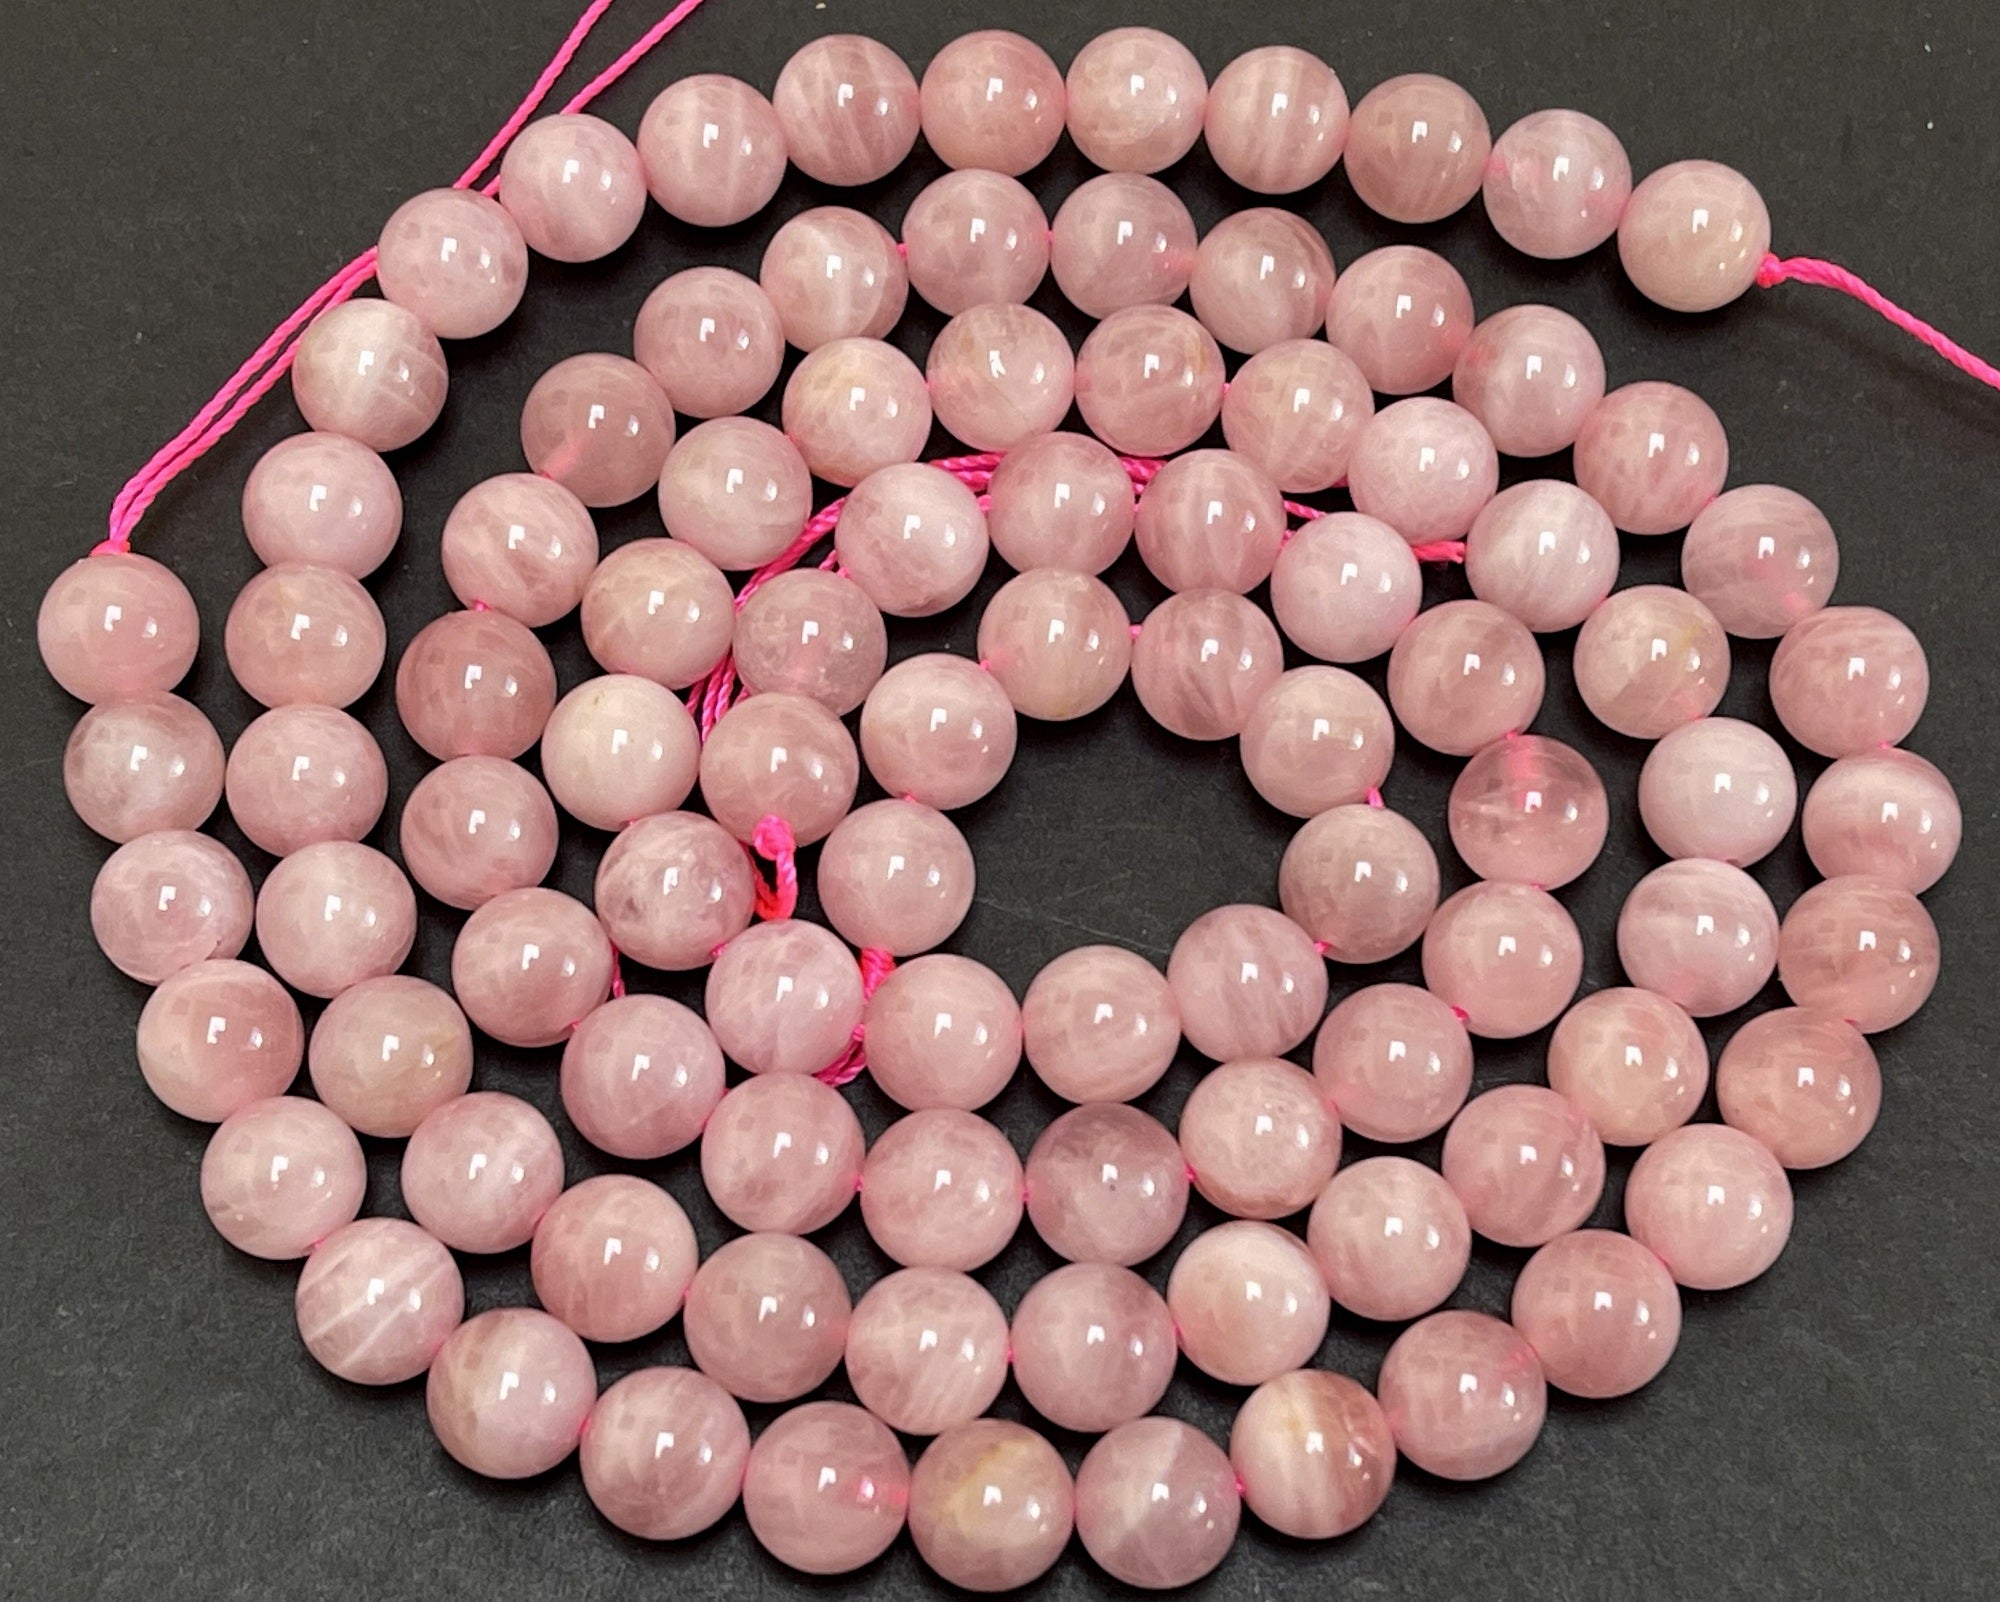 Madagascar Rose Quartz 8mm round natural gemstone beads 15.5" strand